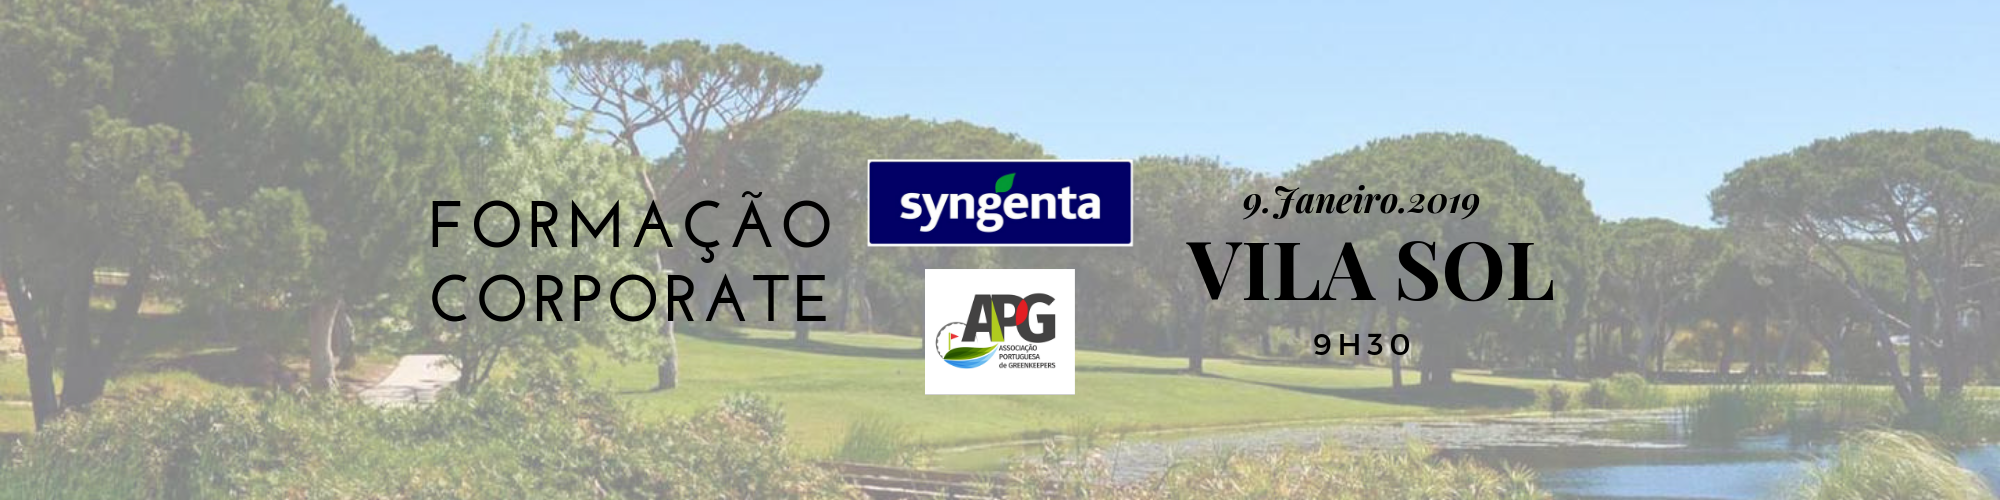 Formação Corporate APG/Syngenta